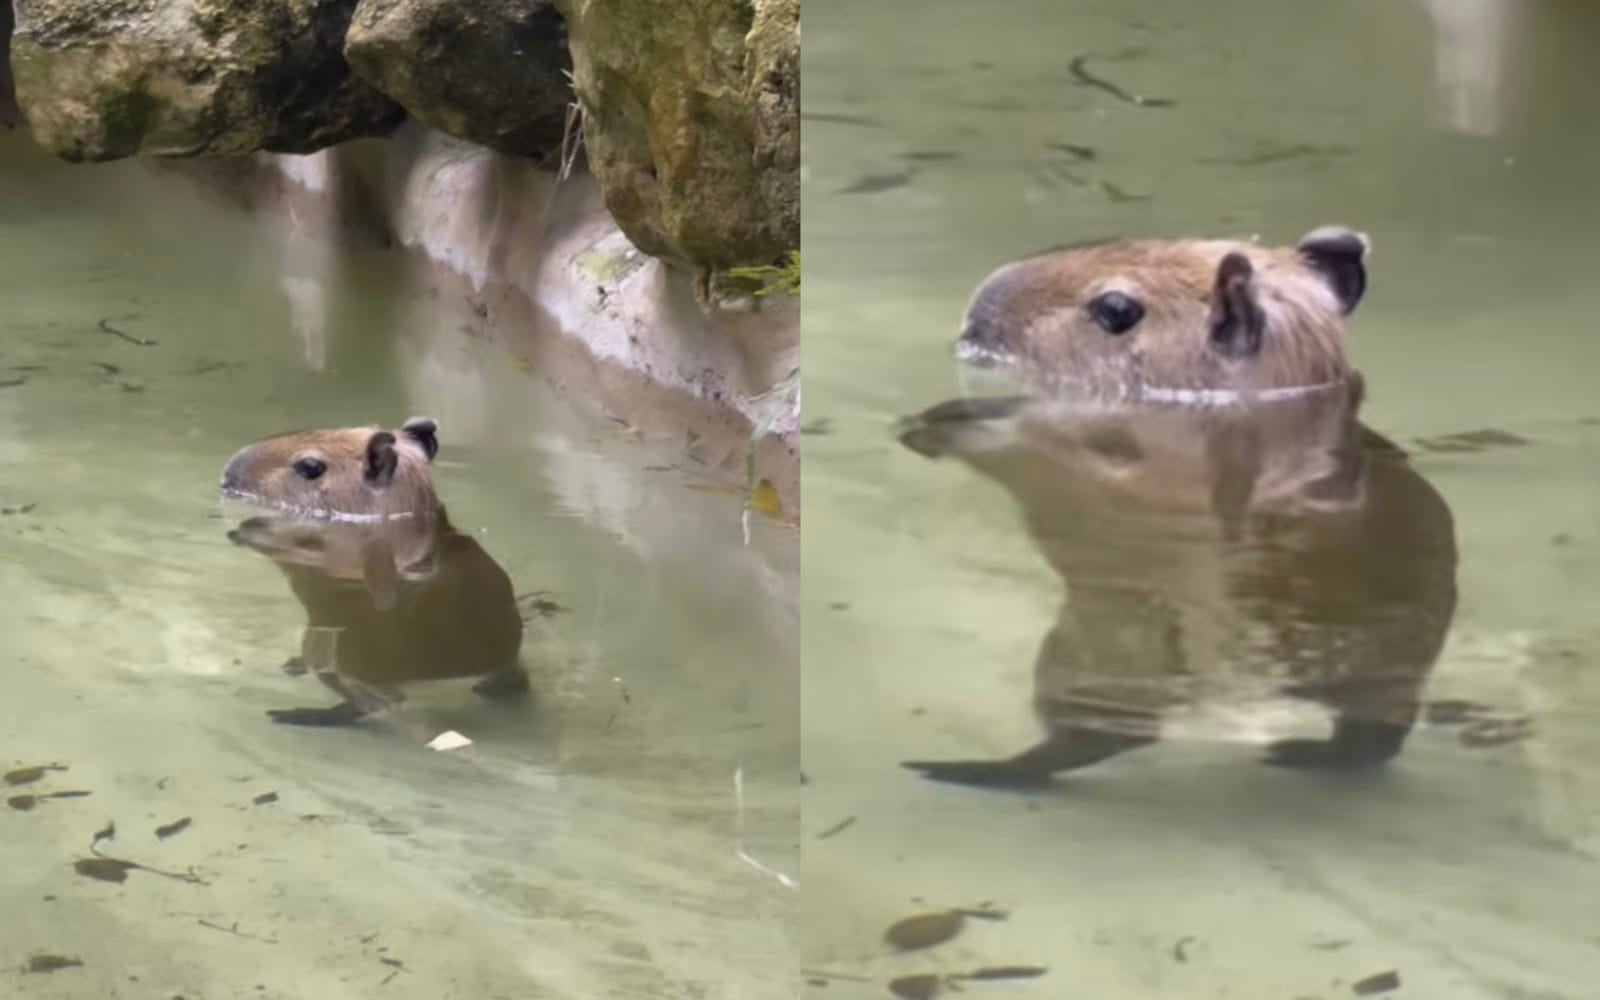 คลิปวิดีโอคาปิบาร่า หมามะพร้าว เดินย่องในน้ำ